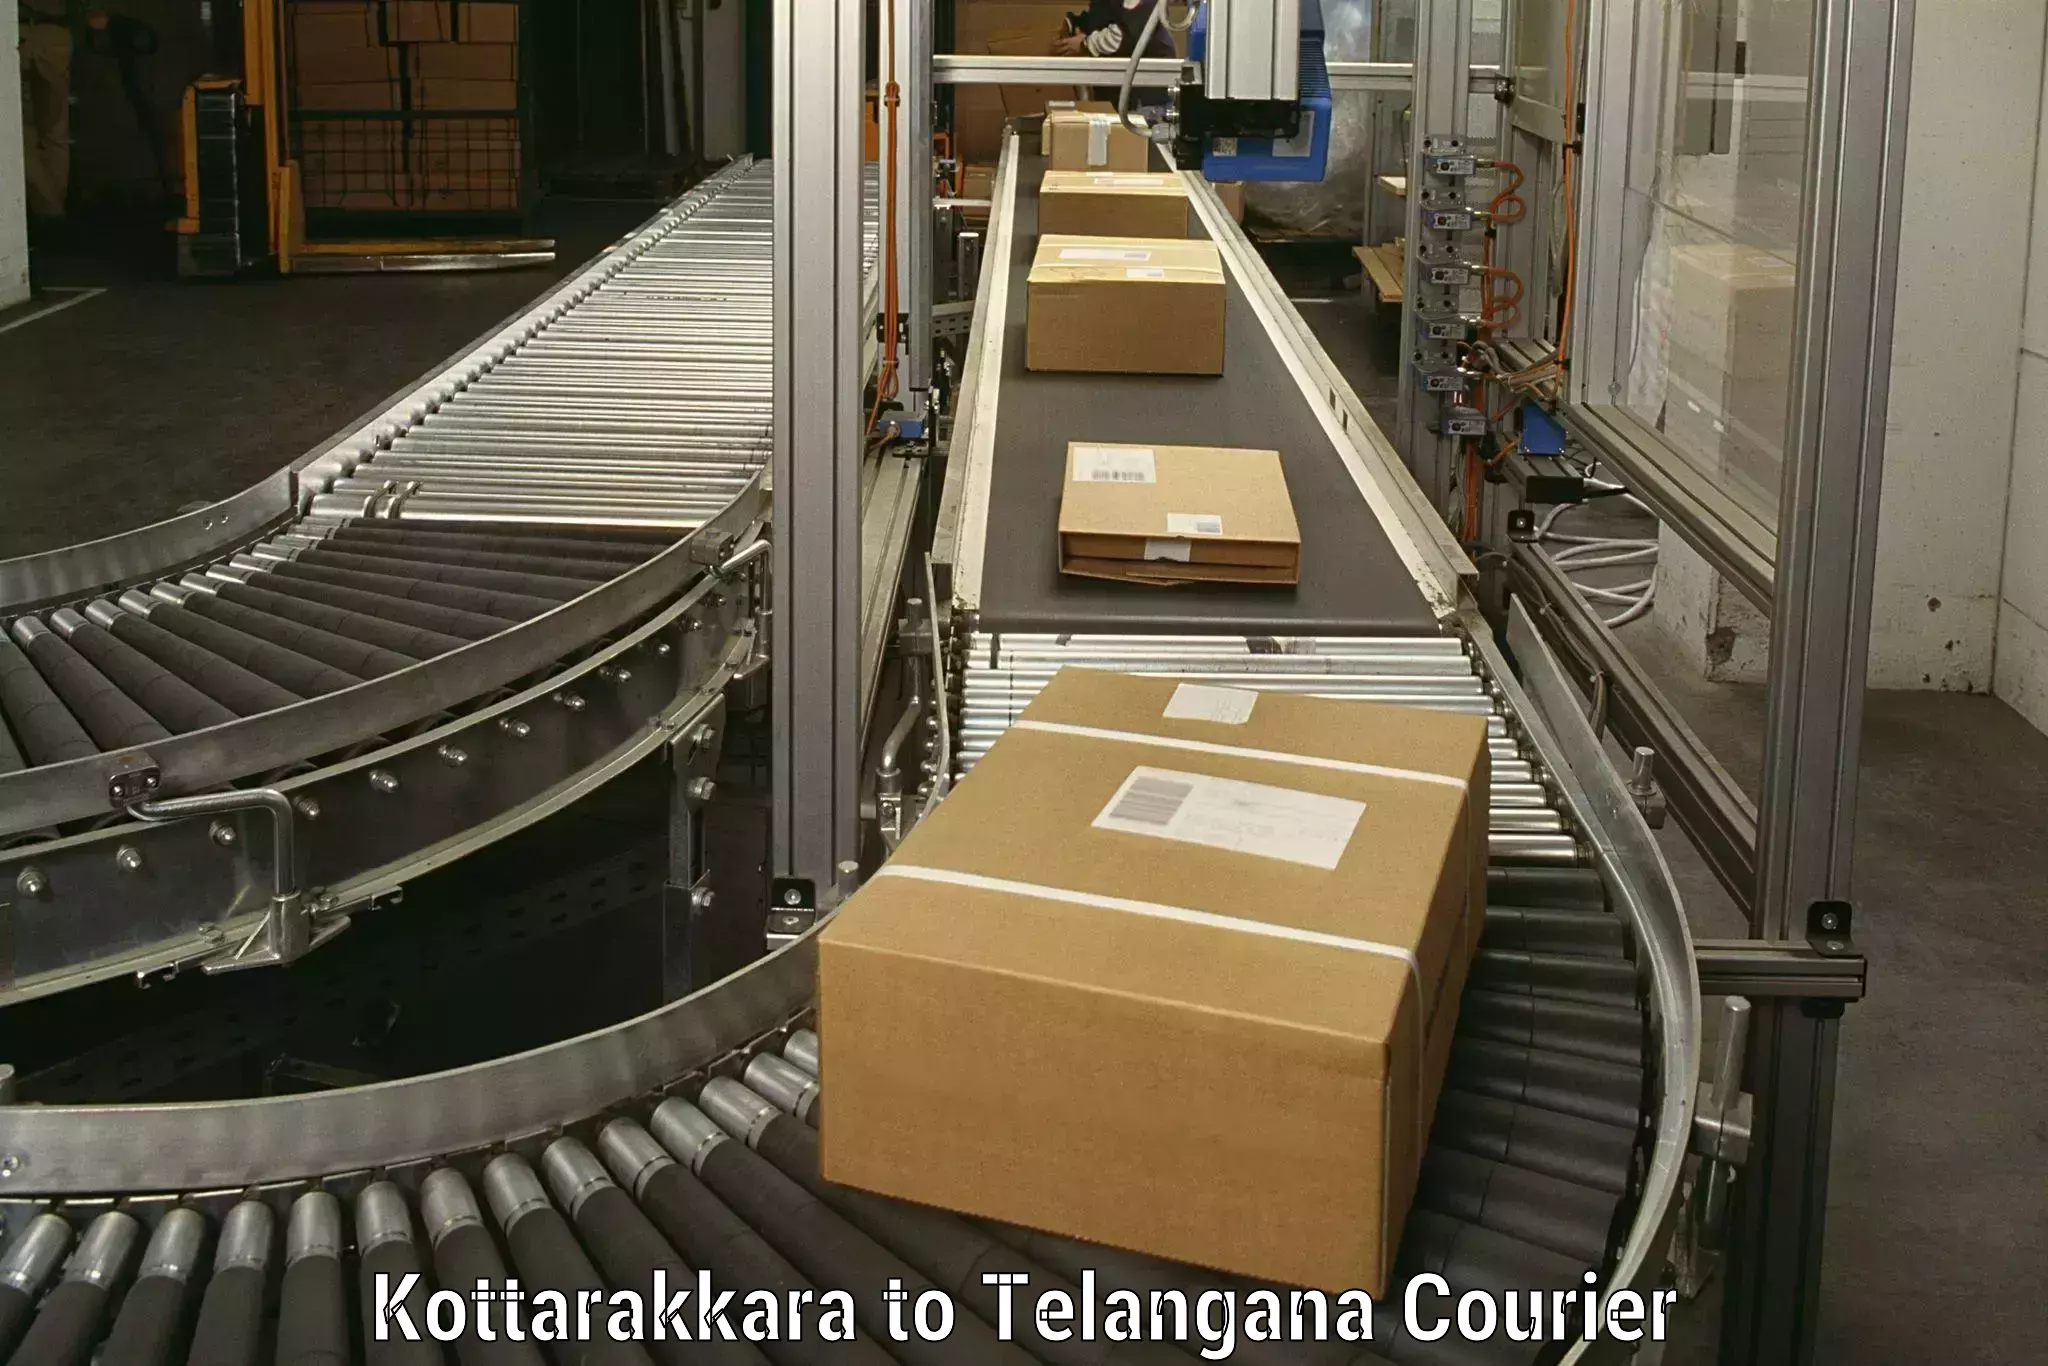 Efficient packing and moving Kottarakkara to Mahabubabad